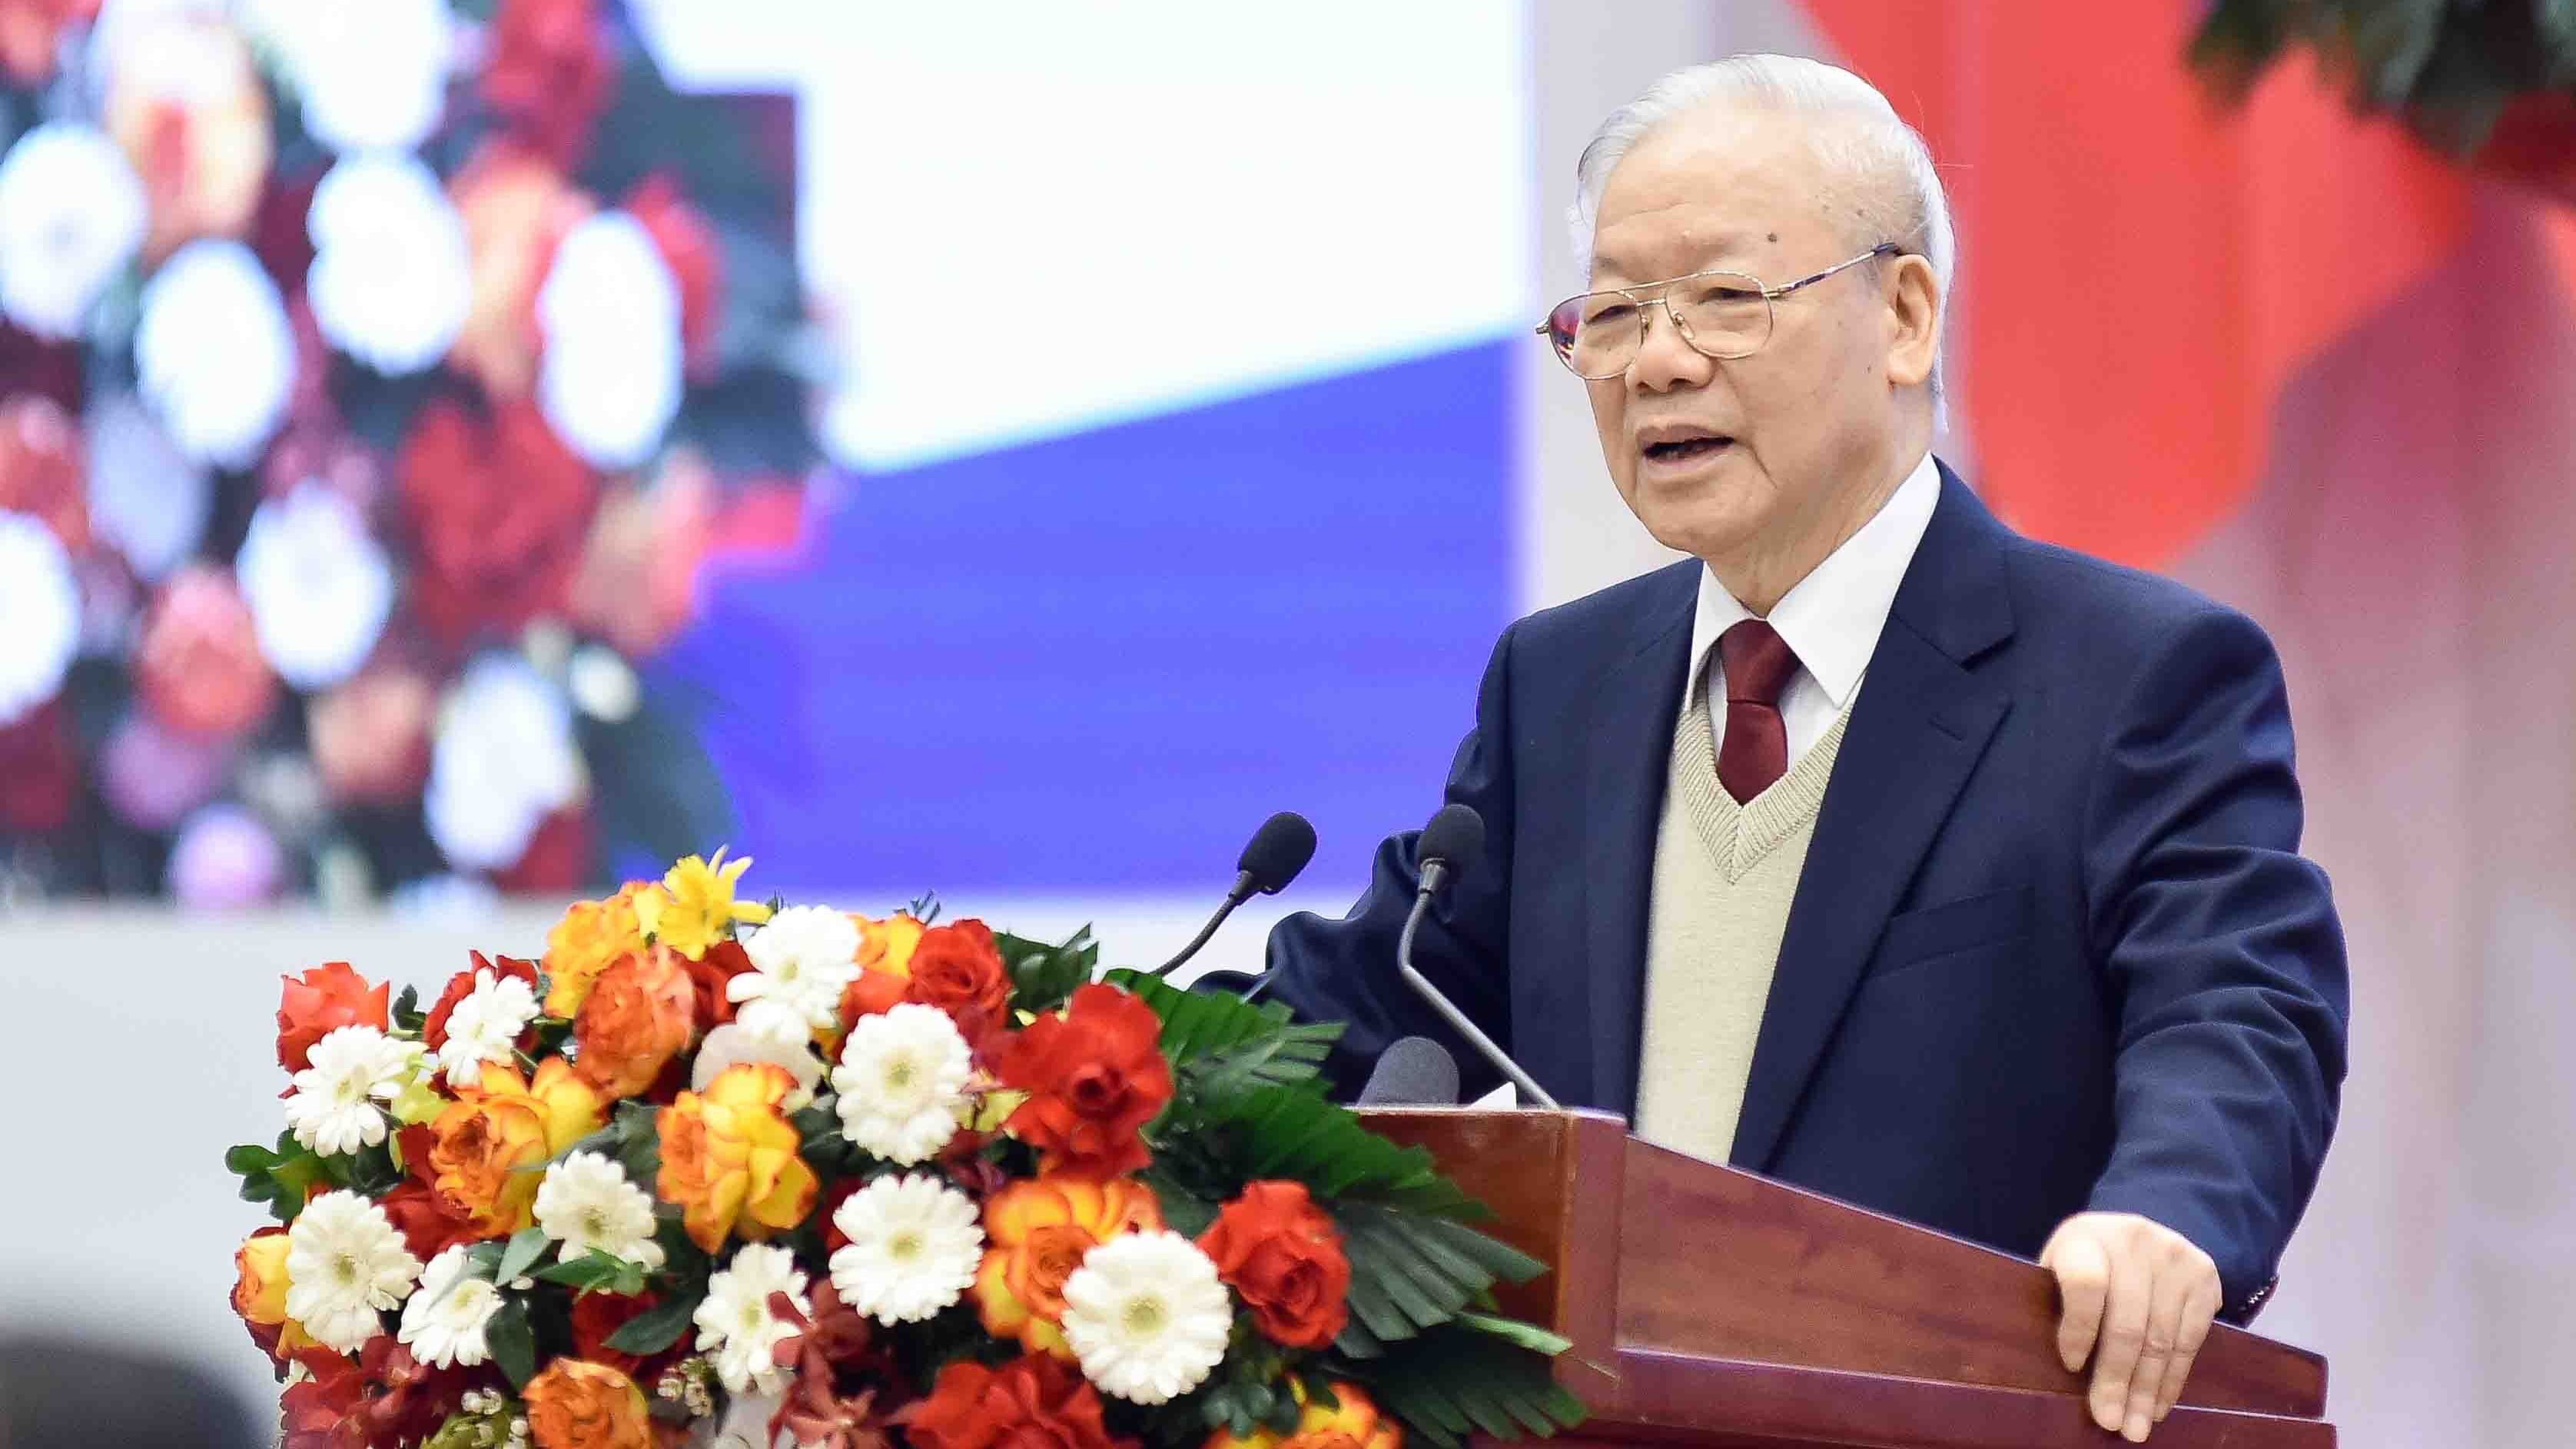 Lãnh đạo các nước, chính đảng chúc mừng Tổng Bí thư Nguyễn Phú Trọng nhân dịp Năm mới 2024 và Tết cổ truyển của Việt Nam